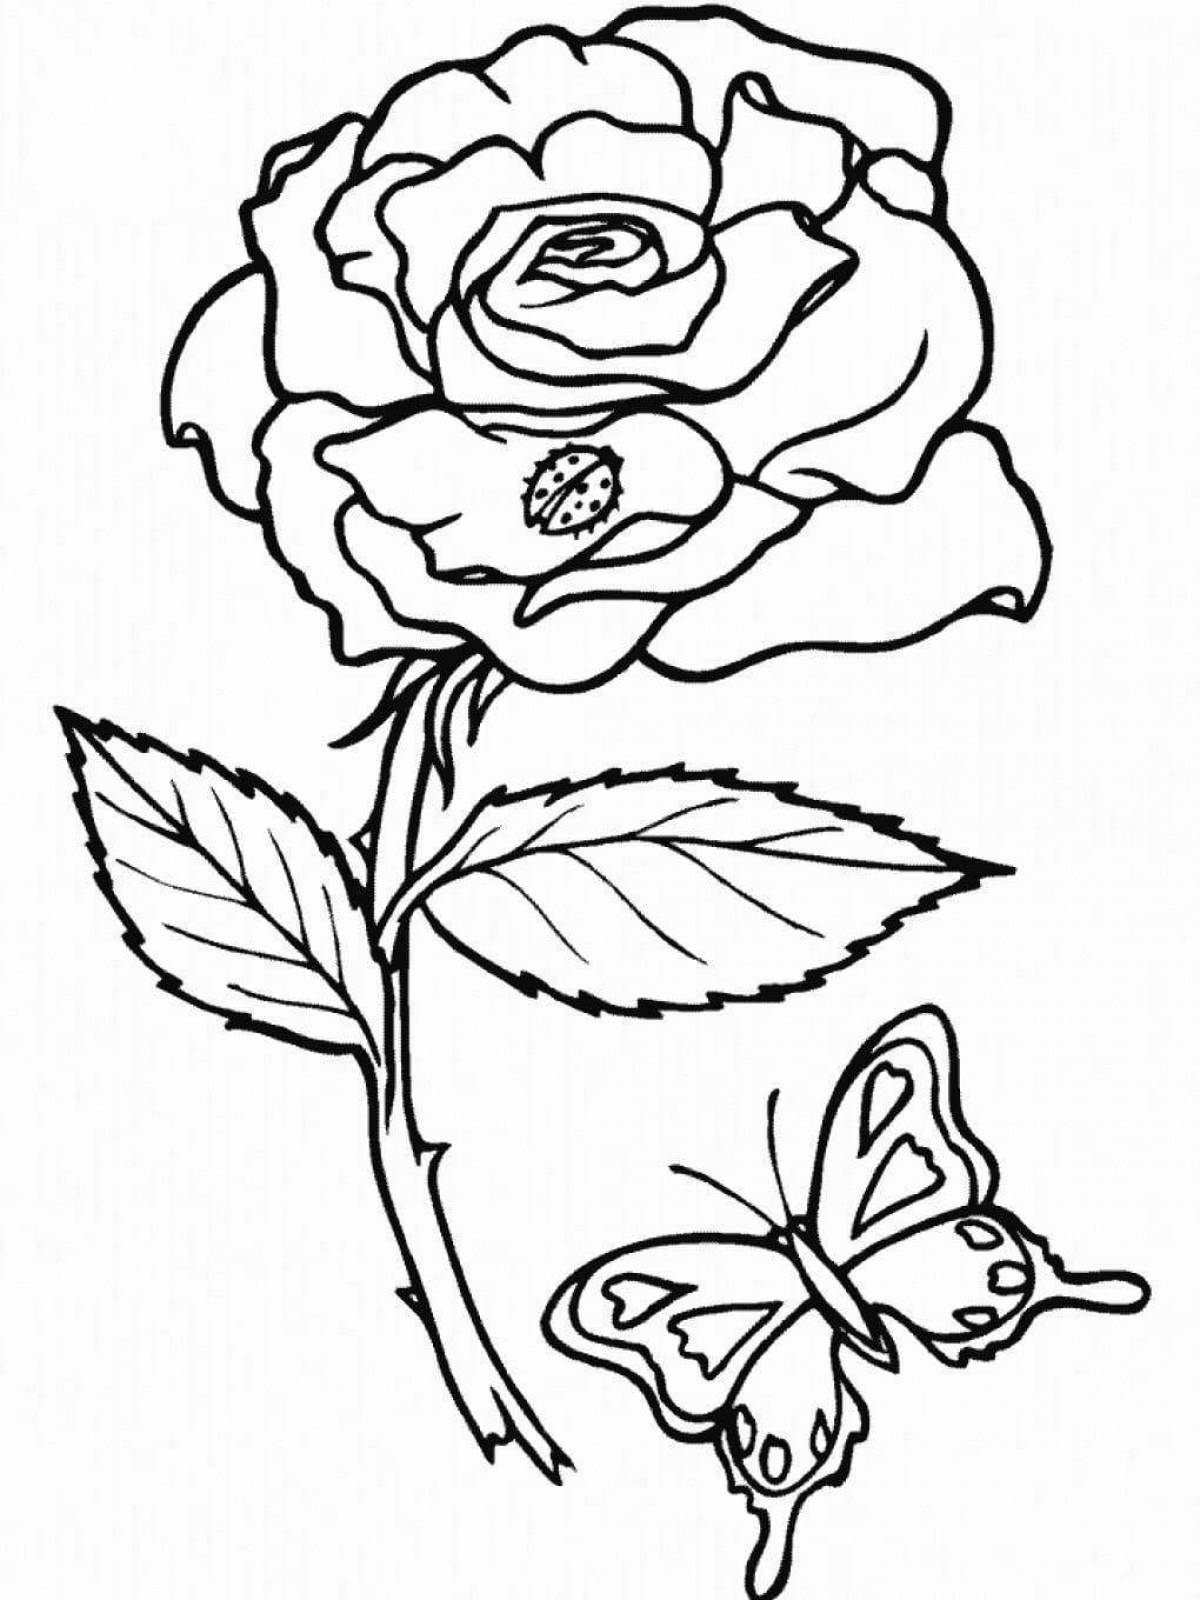 Веселая раскраска розы для детей 5-6 лет